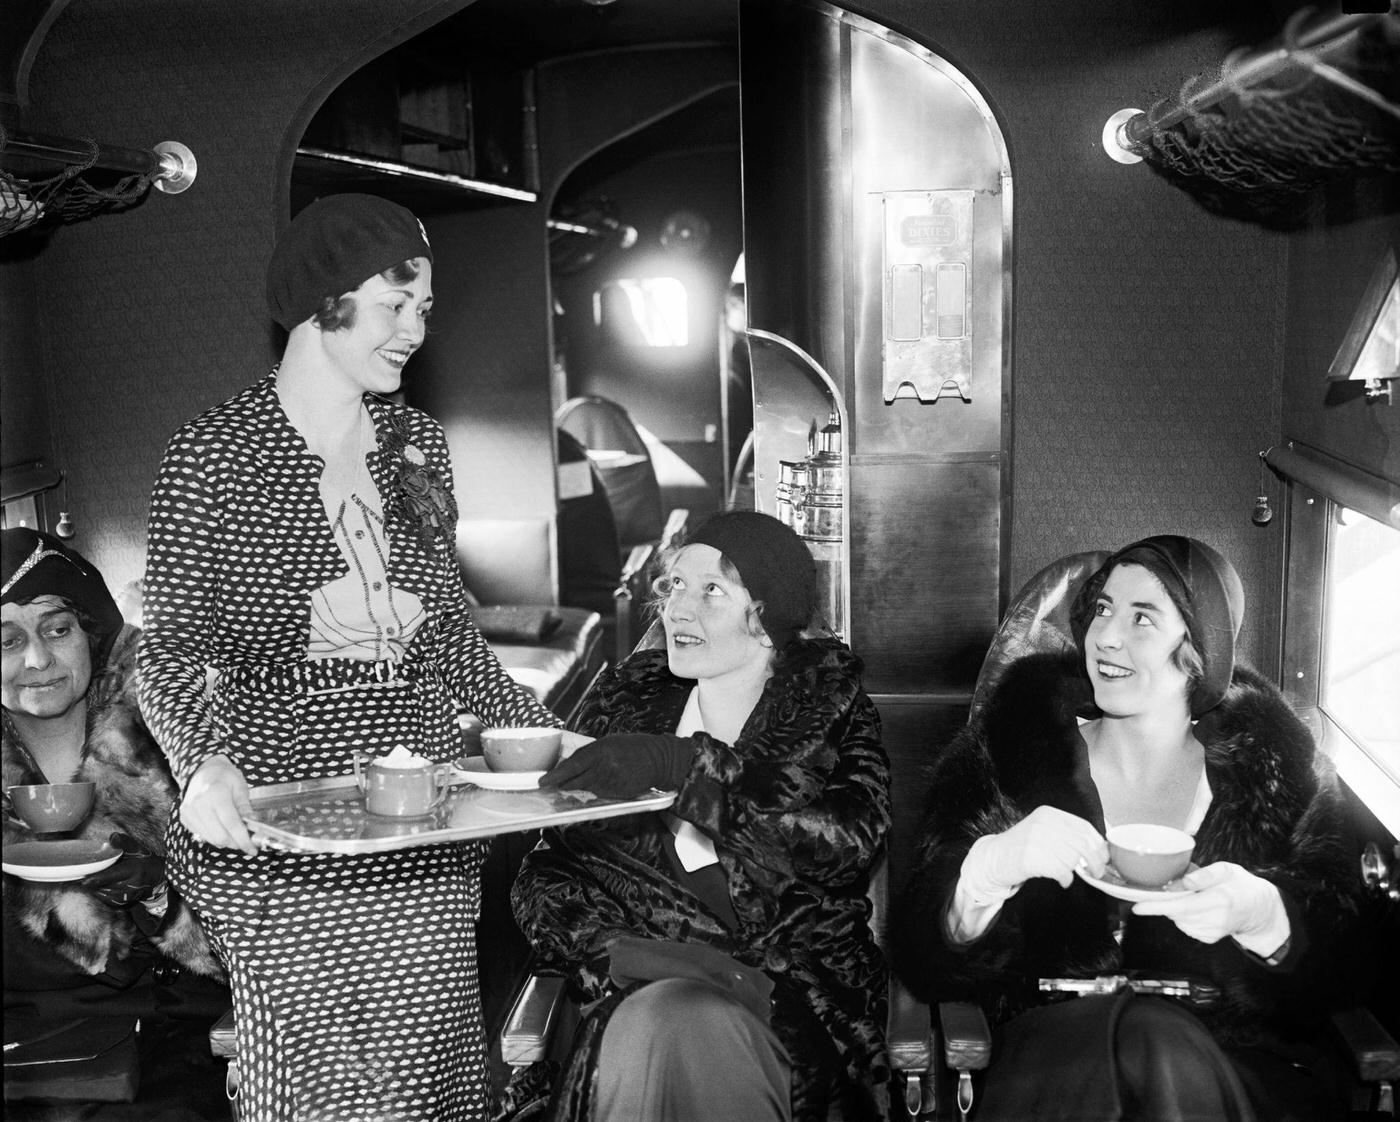 An Eastern Air Transport flight attendant serves tea to passengers, 1931